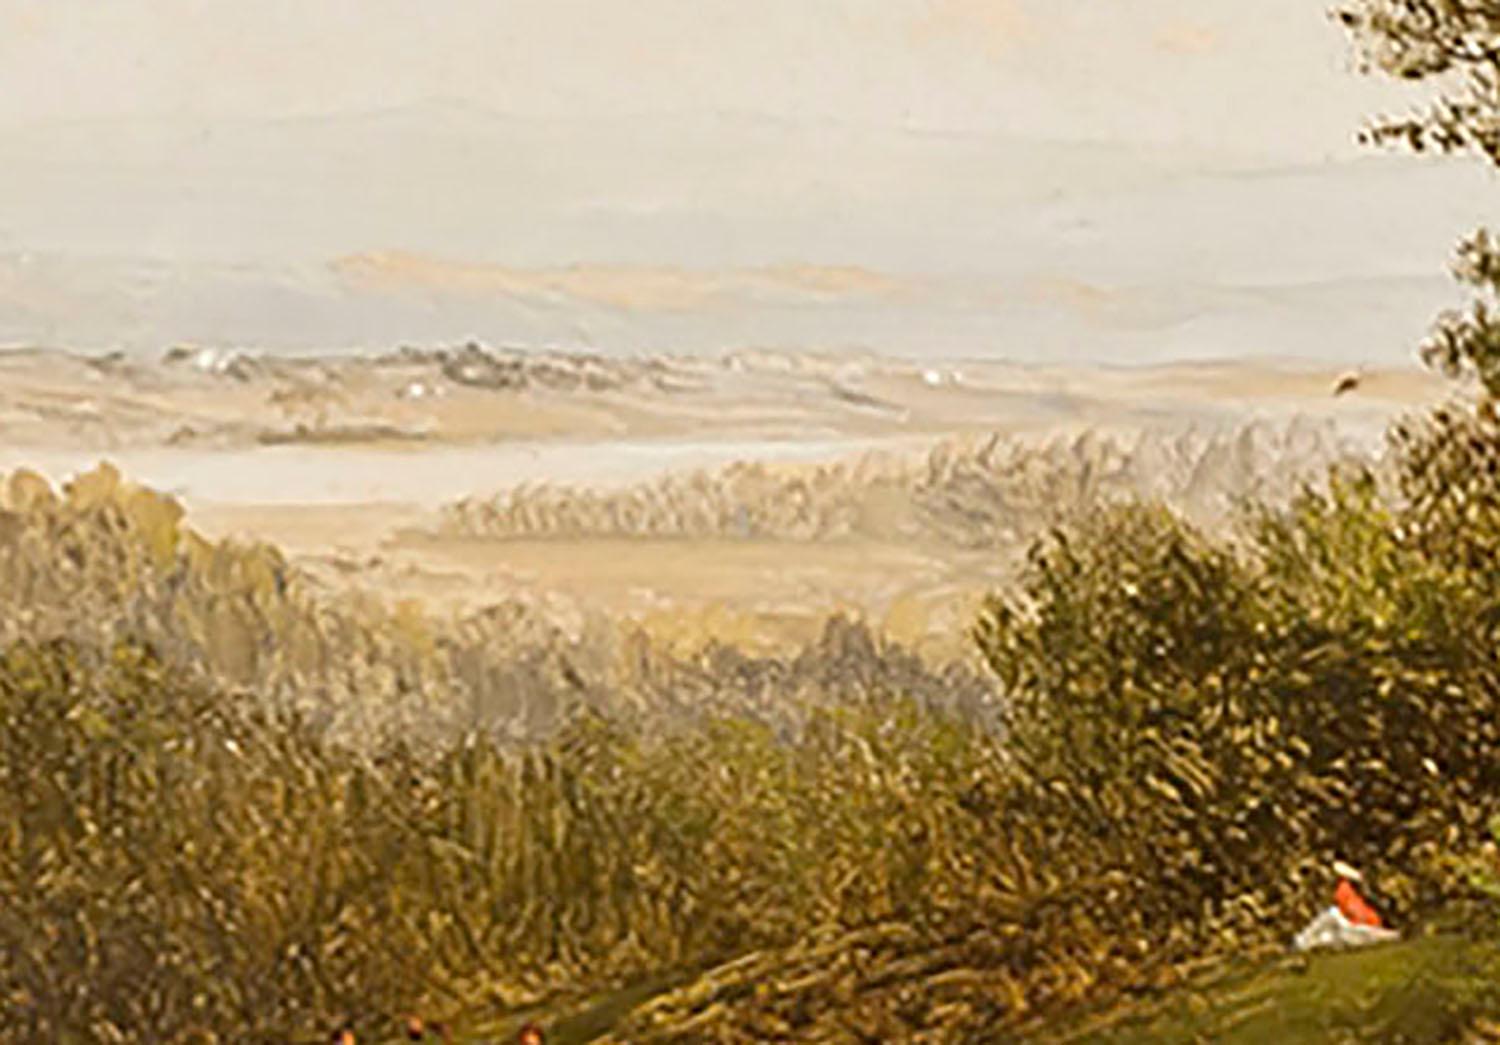 Figur in einem Landschaftsbild  – Painting von David Johnson